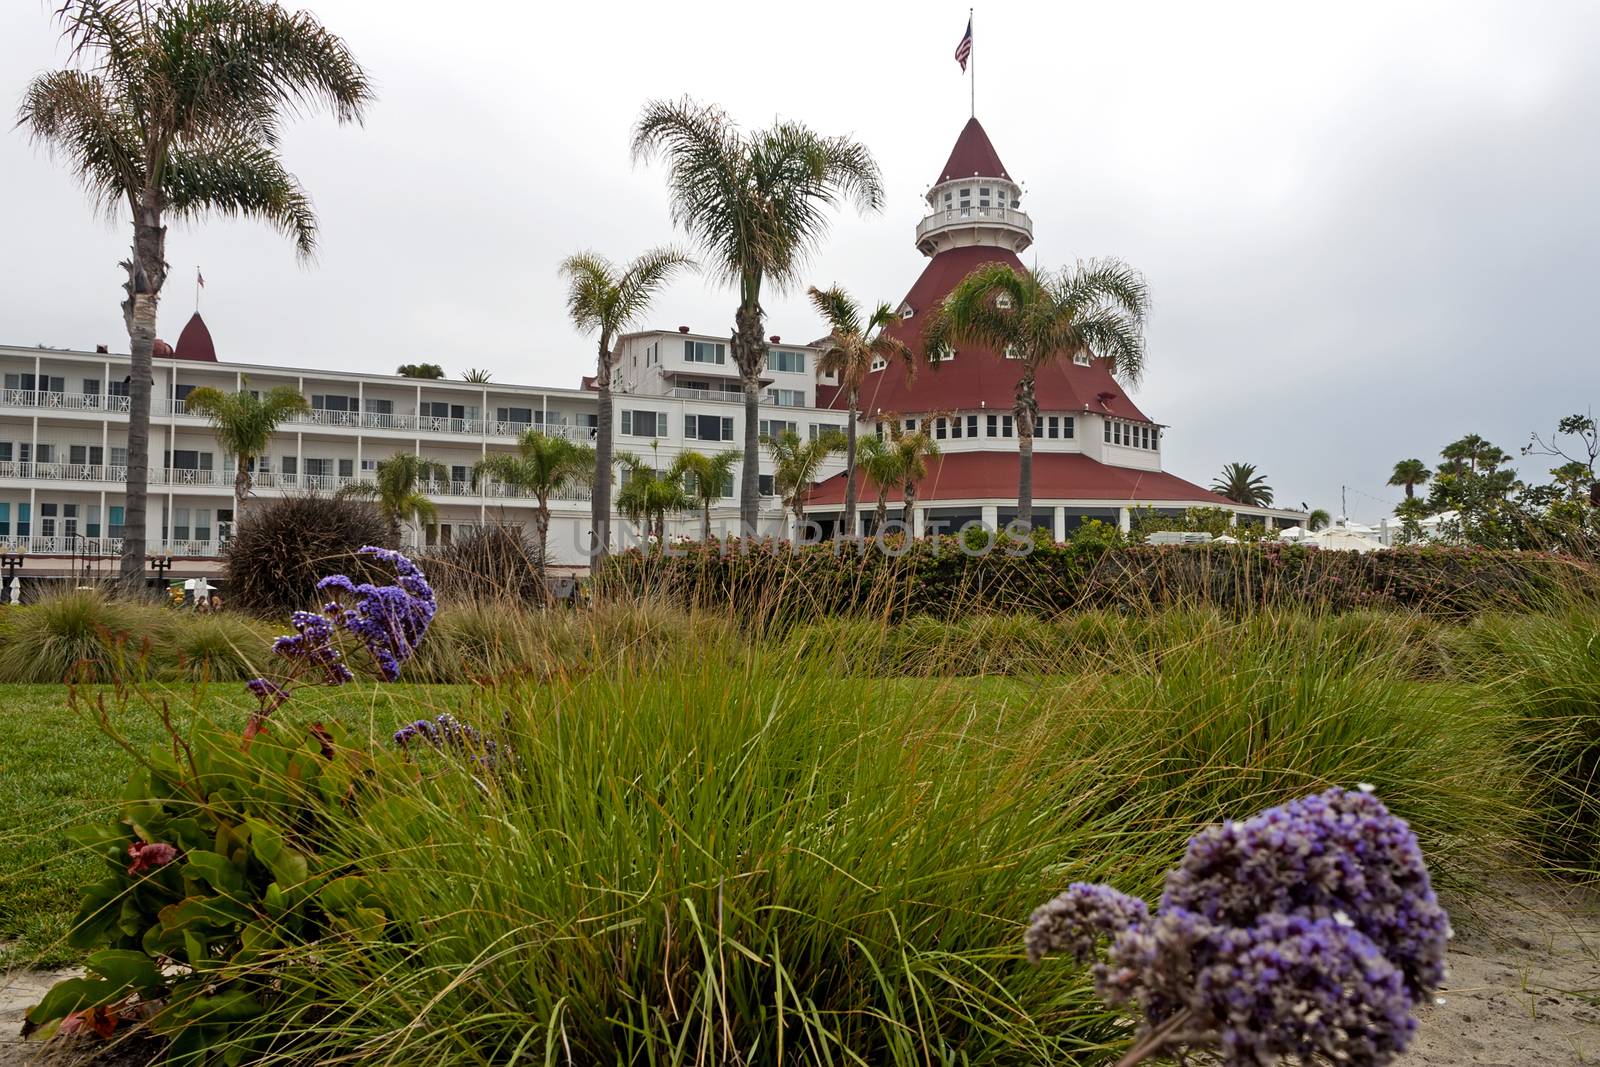 Coronado,Ca - May 28:View from the beach of the historic Hotel del Coronado,California on May 28,2014.